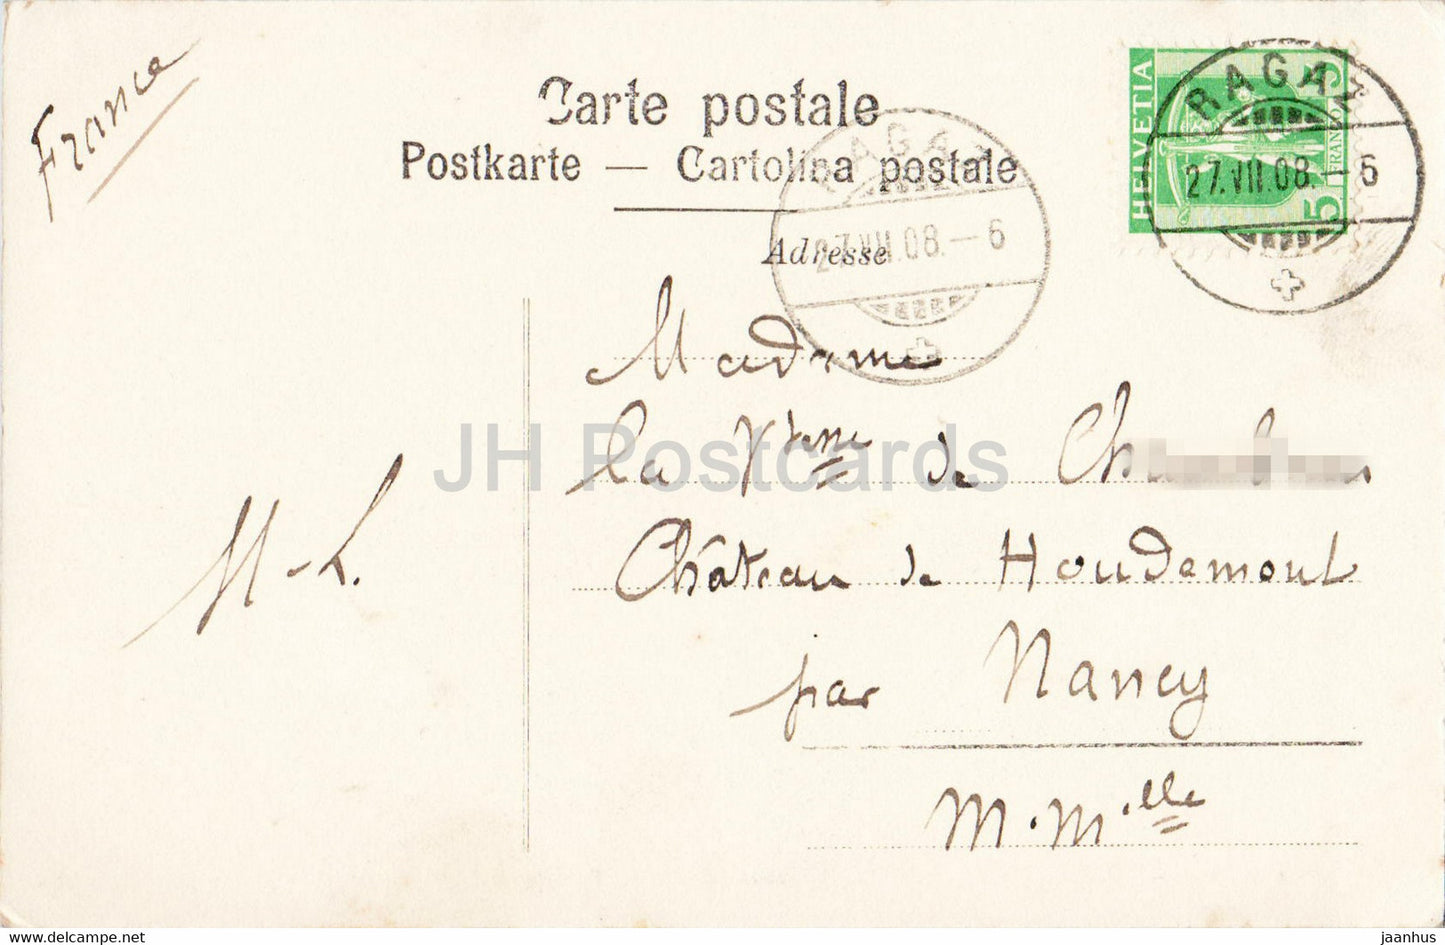 Ragaz - Ruine und Hotel Wartenstein - 6524 - old postcard - 1908 - Switzerland - used